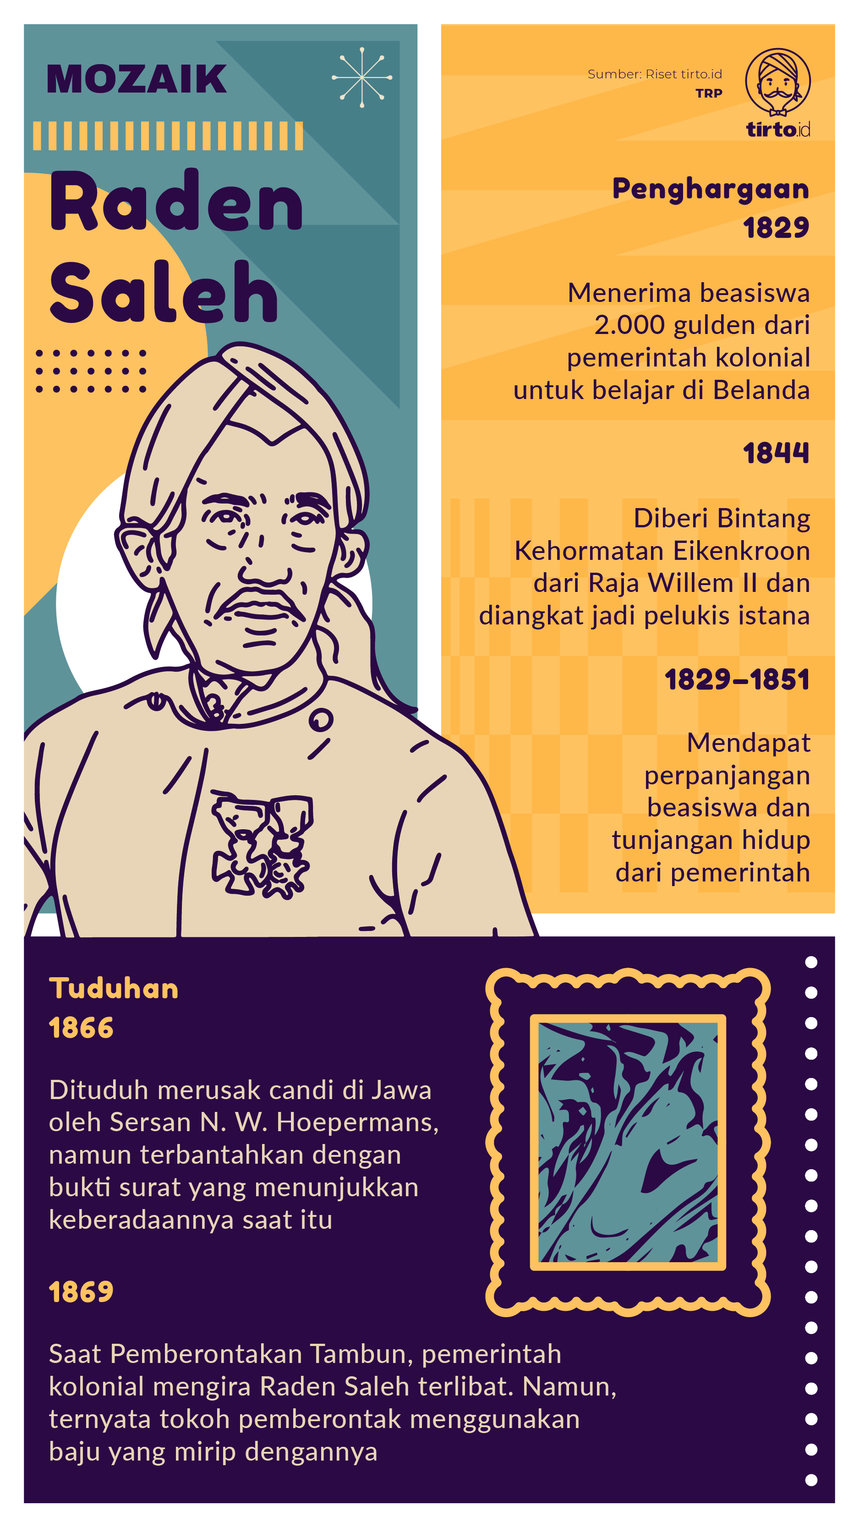 Infografik Mozaik Raden Saleh